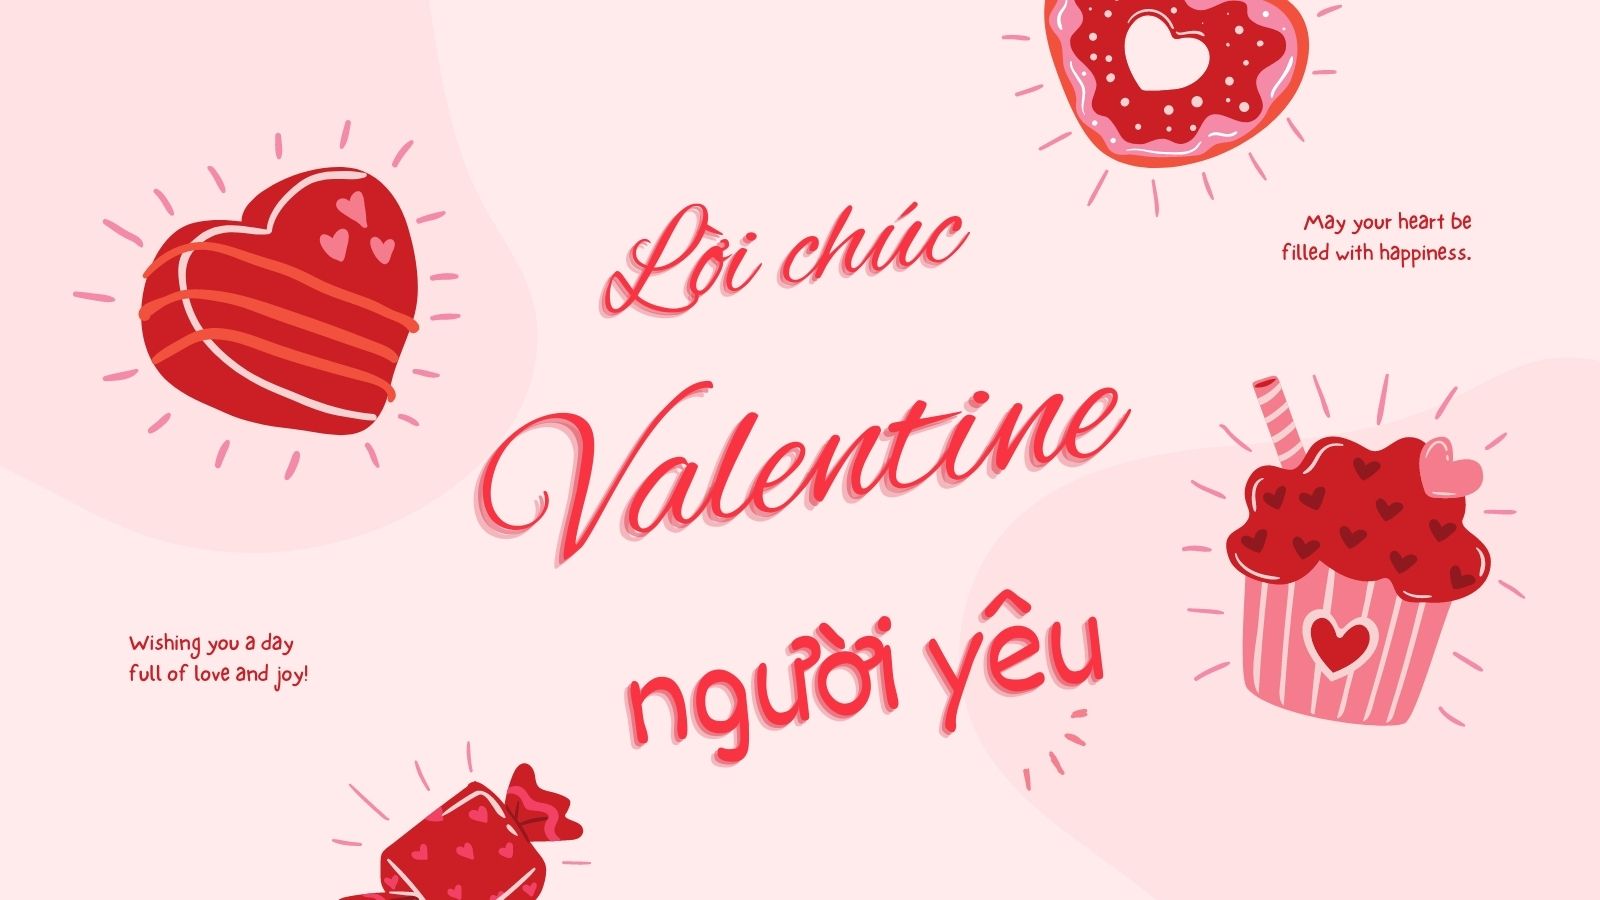 100 lời chúc Valentine người yêu lãng mạn và ấm áp nhất